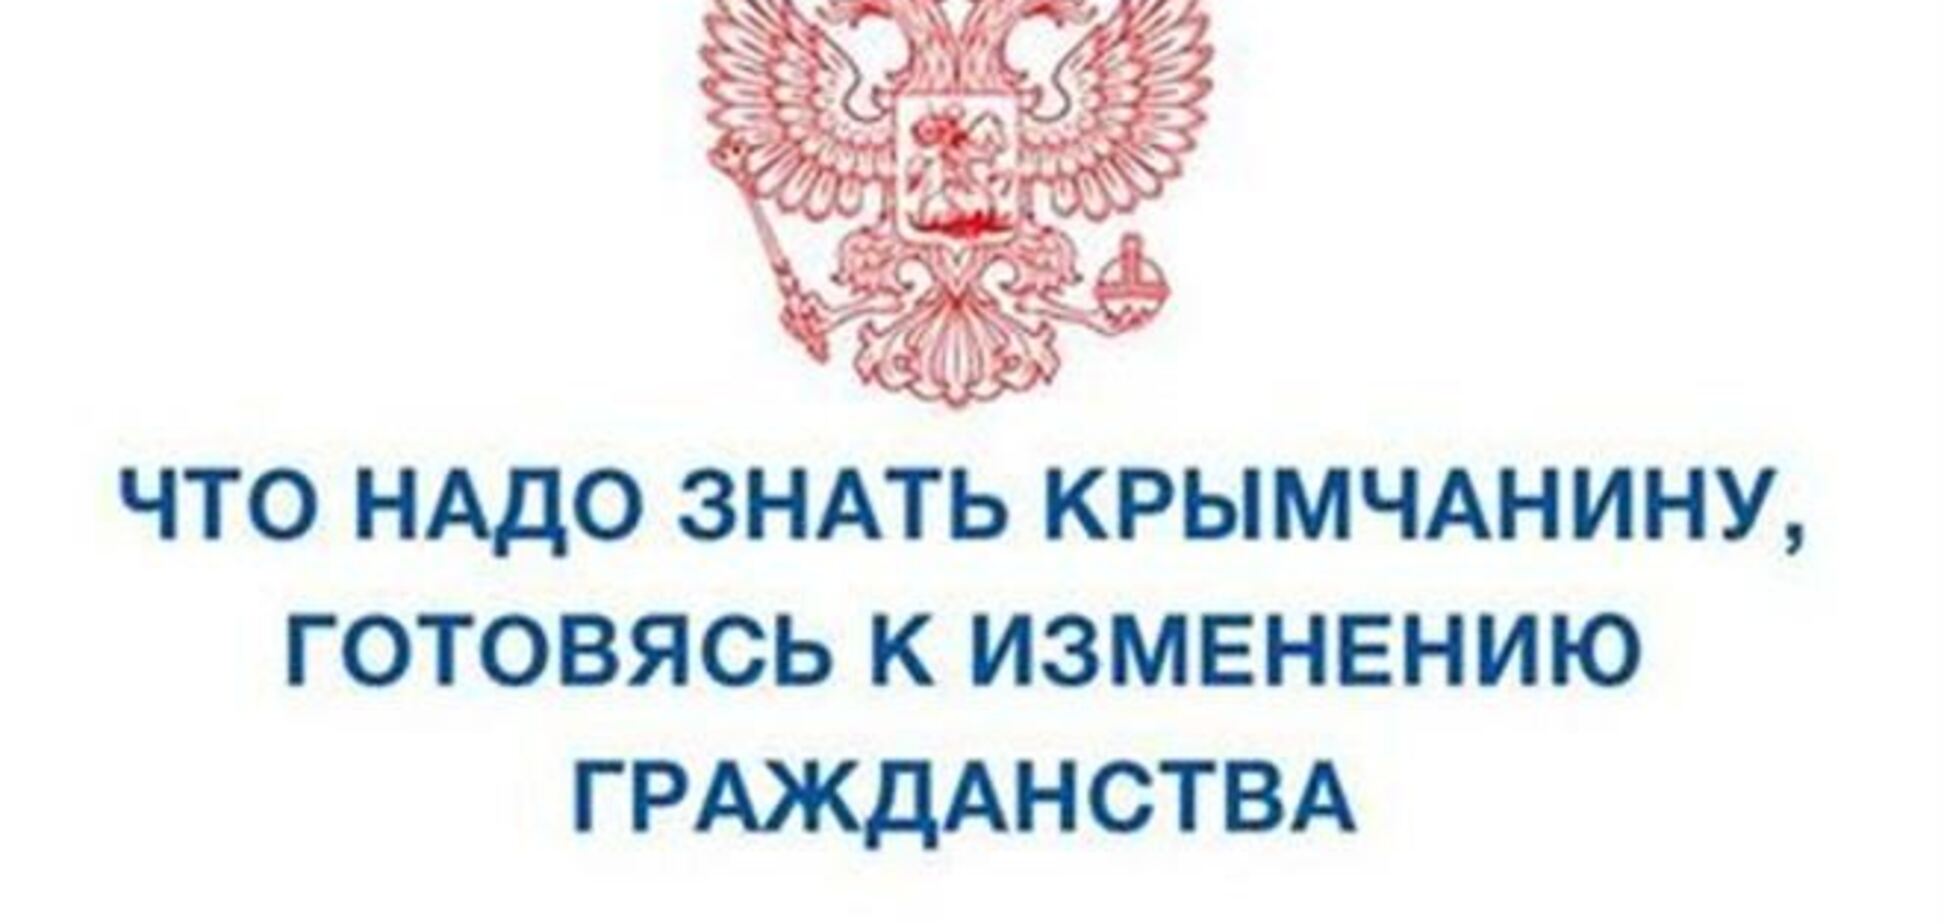 Крымчан предупредили о последствиях смены гражданства. Фотофакт